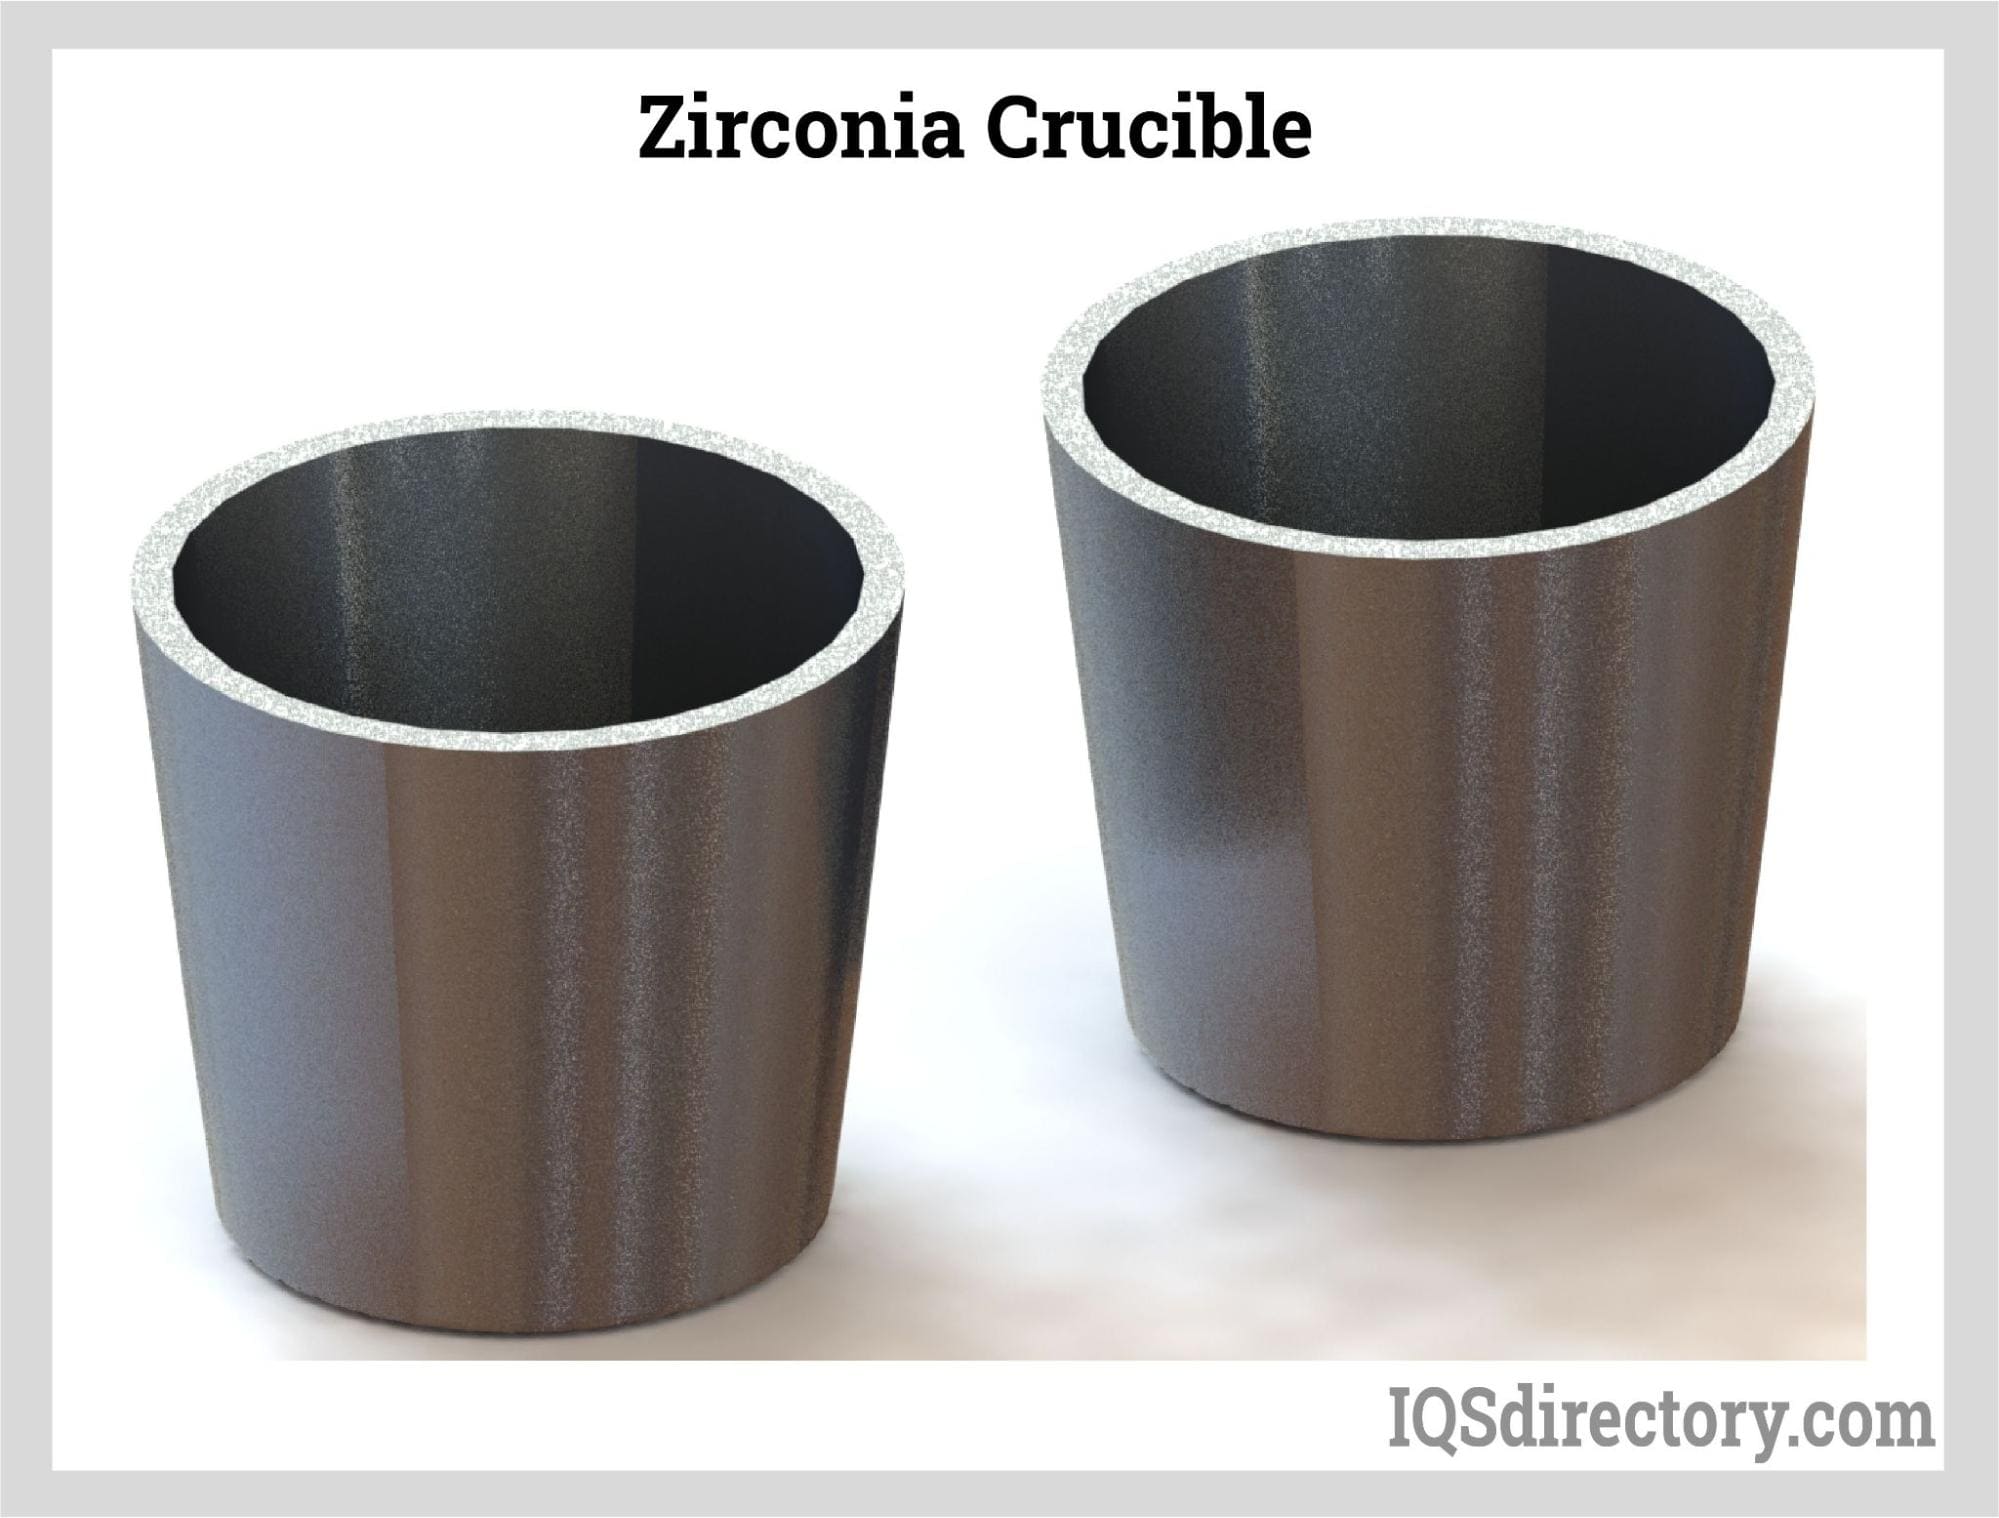 zirconia crucible